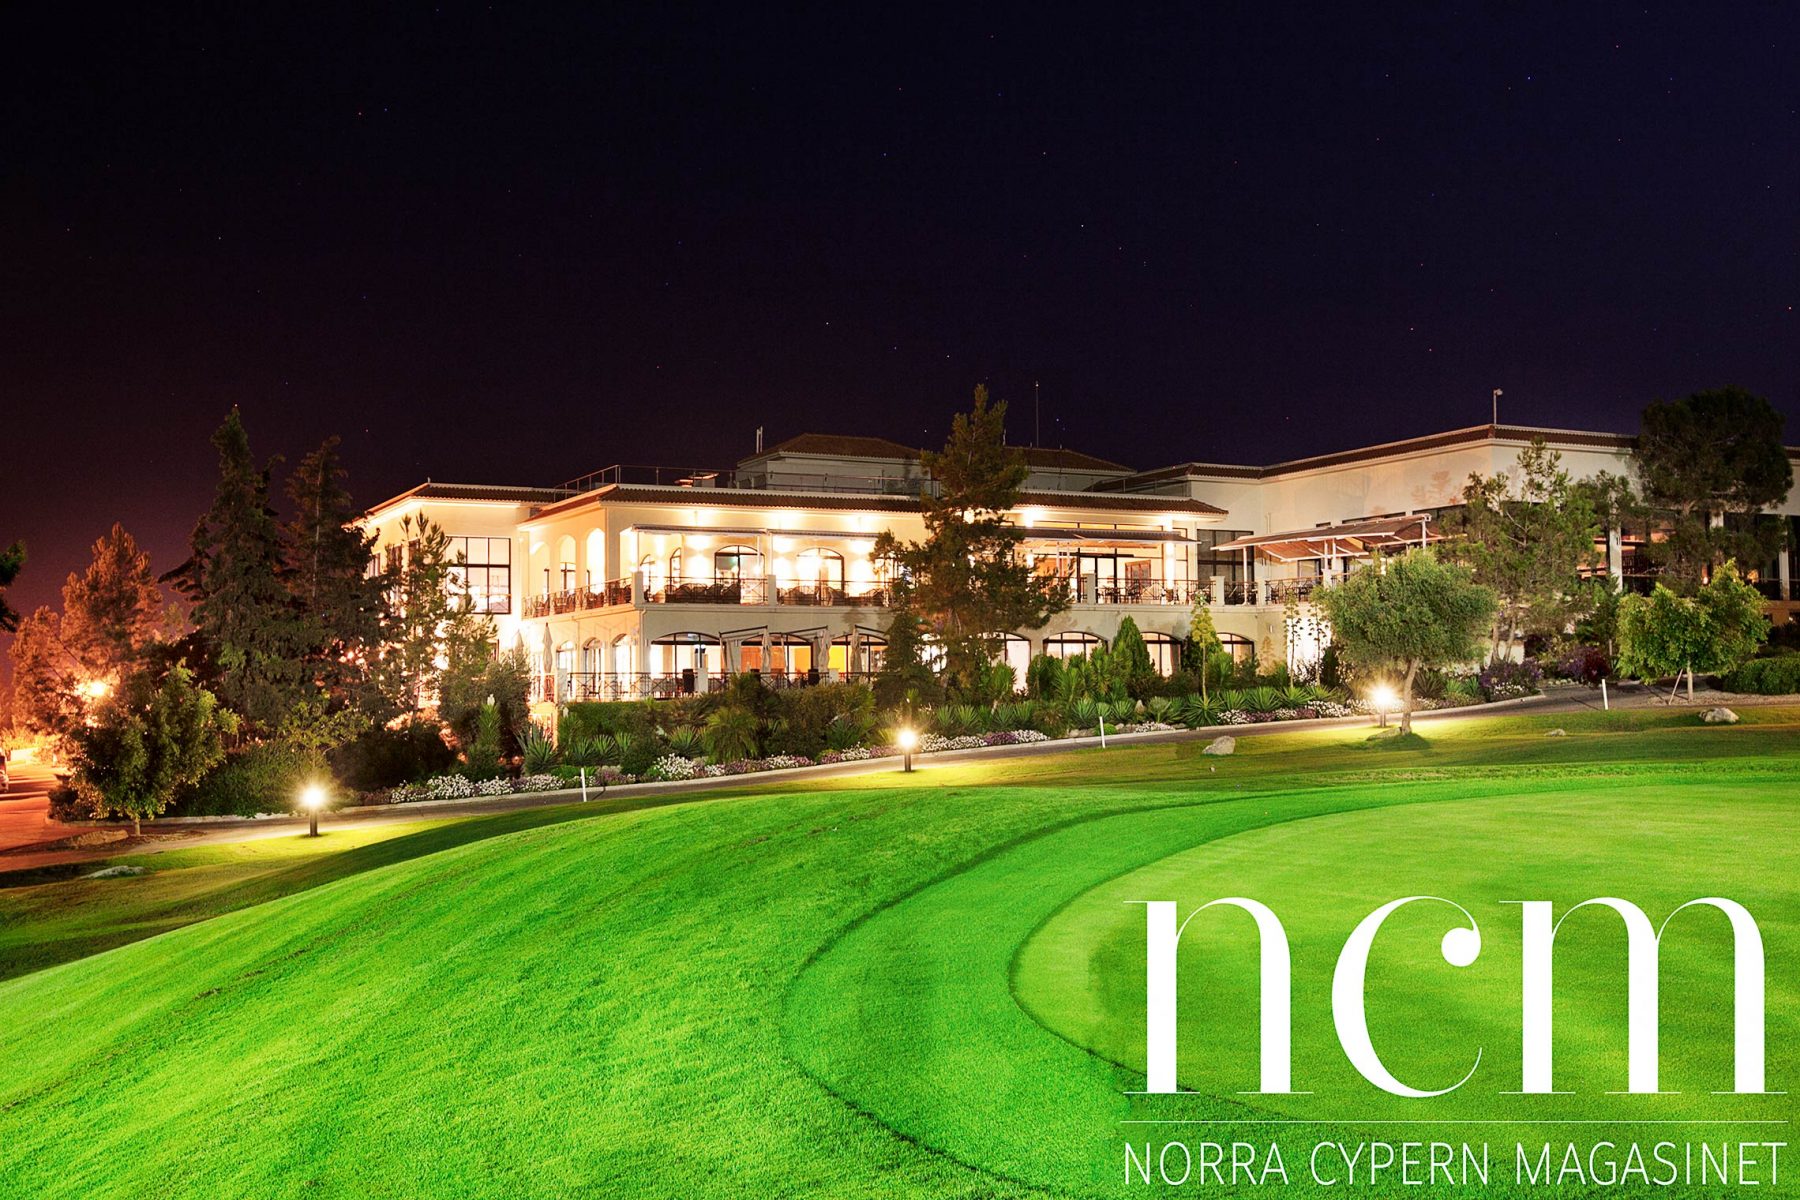 Cypriotisk afton på Korinuem Golf Course